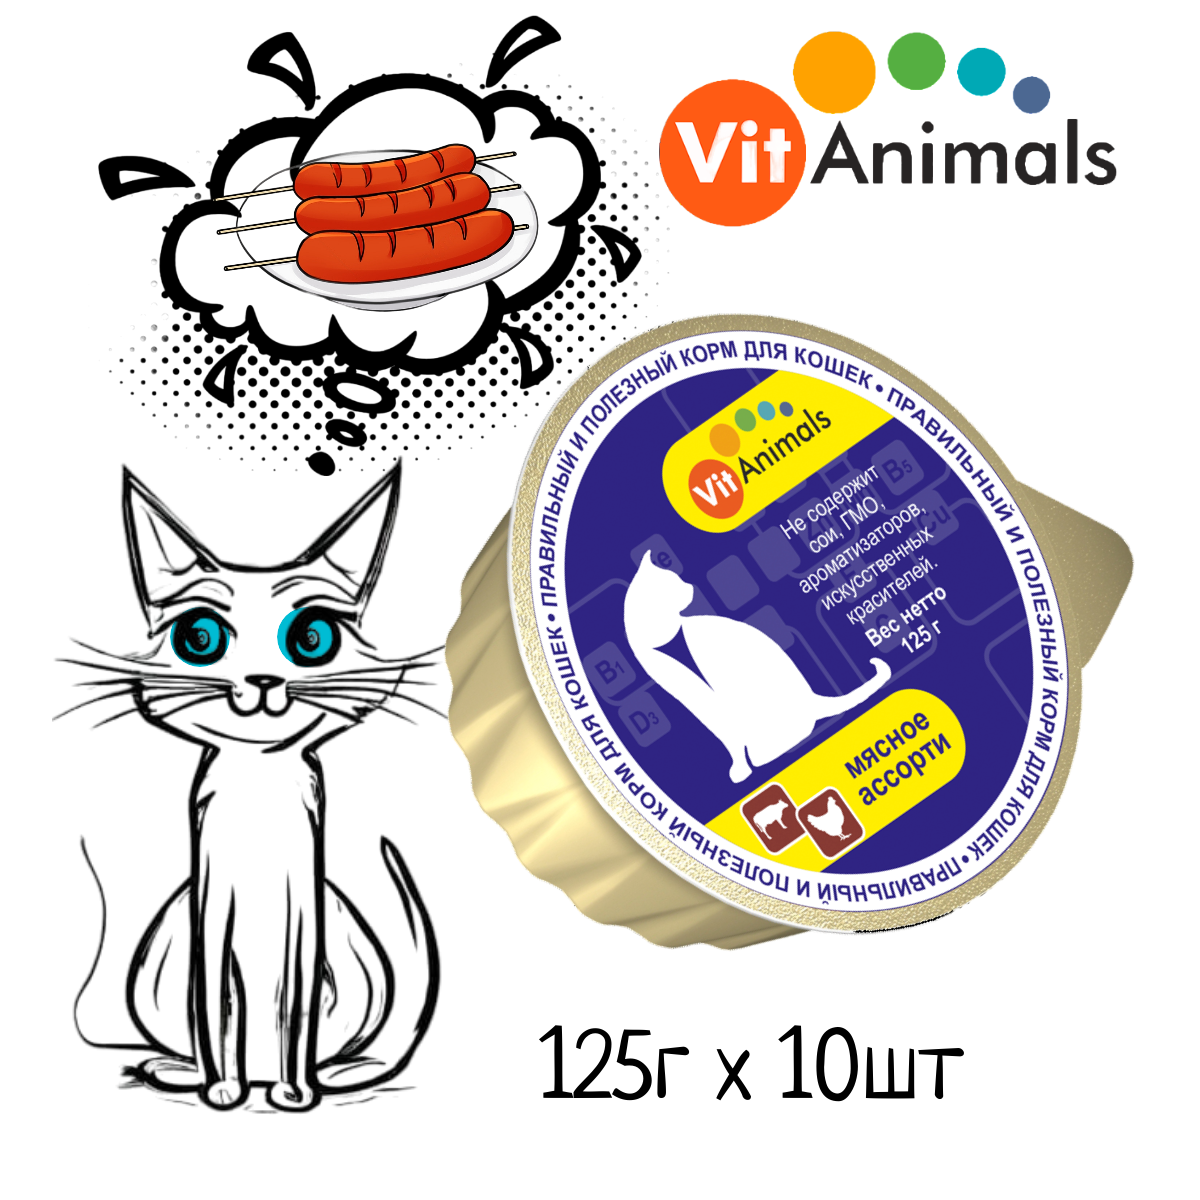 VitAnimals консервы для кошек Мясное ассорти 125г (10 шт)